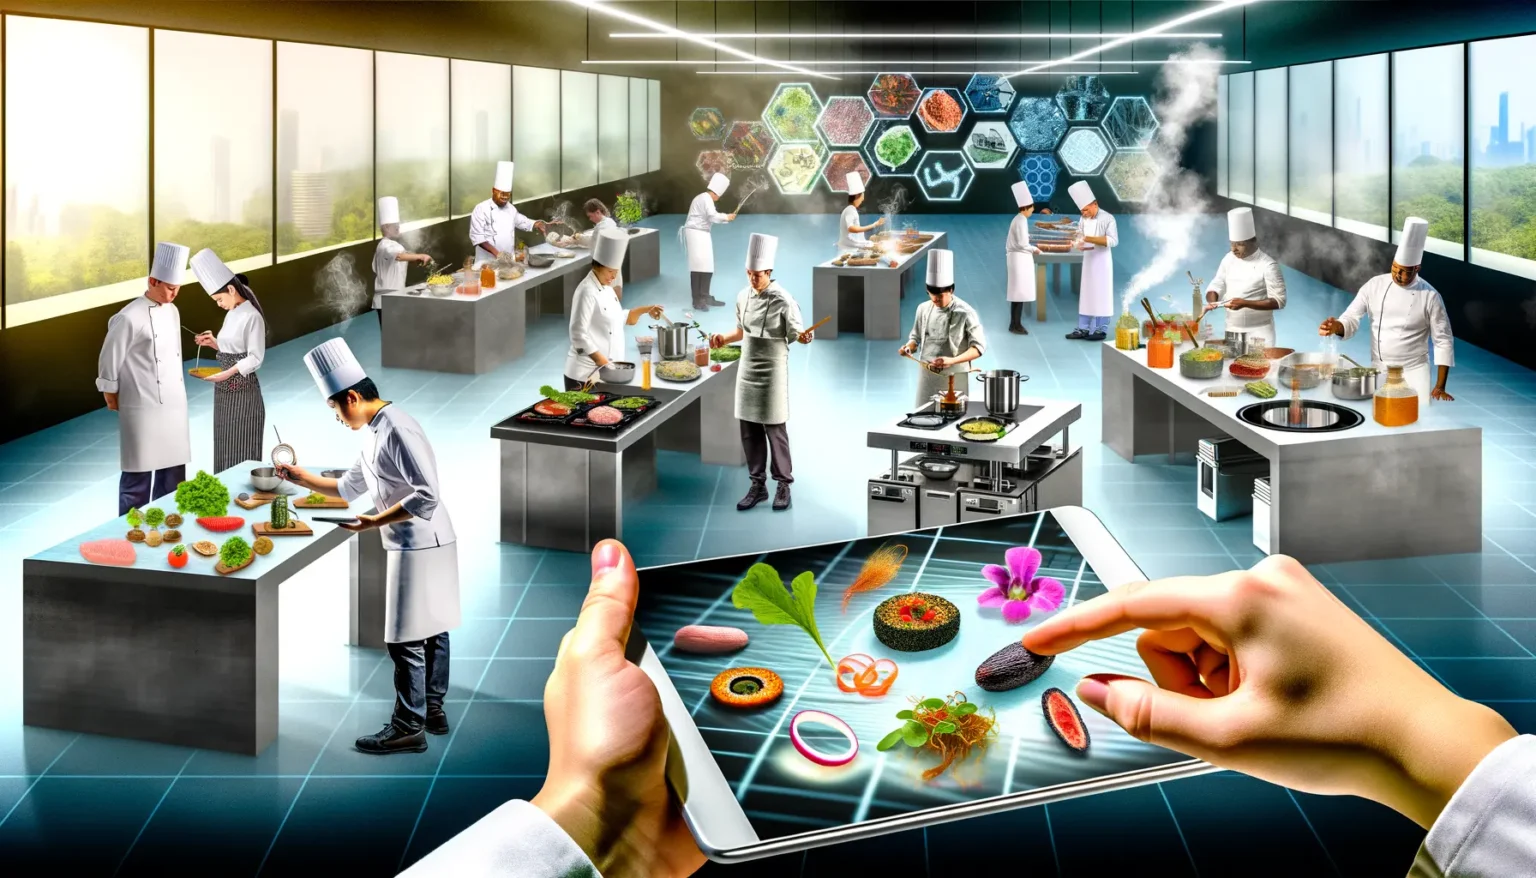 Ein futuristisches Küchenkonzept mit Köchen, die an verschiedenen modernen Kochstationen arbeiten, während digitale Elemente wie schwebende Lebensmittelzellen und Rezeptinformationen in der Luft erscheinen. Im Vordergrund interagiert eine Person mit einem großen Tablet, das virtuelle Nahrungsmittel auf seiner Oberfläche anzeigt. Die Szene kombiniert reale Küchenaktivitäten mit digitalen und holographischen Technologien.